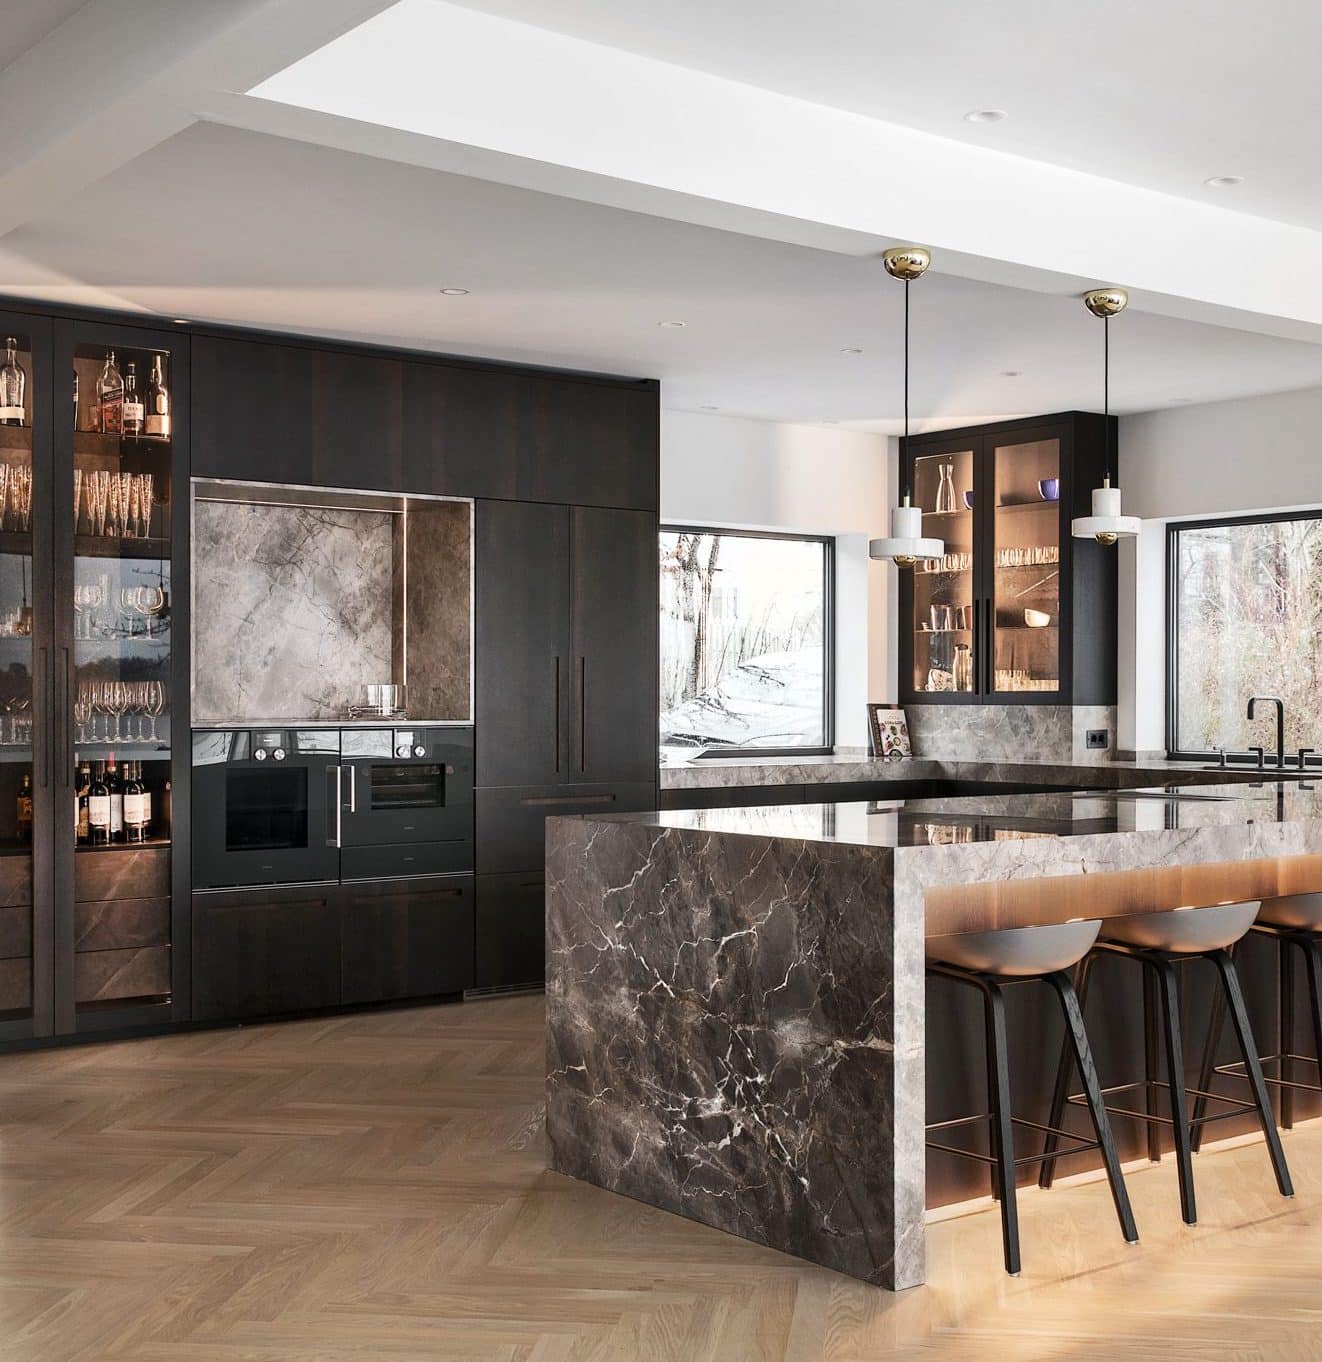 Alt tag para di-bosco-mármore-cozinha-preto-moderno-design de interiores-cococozy